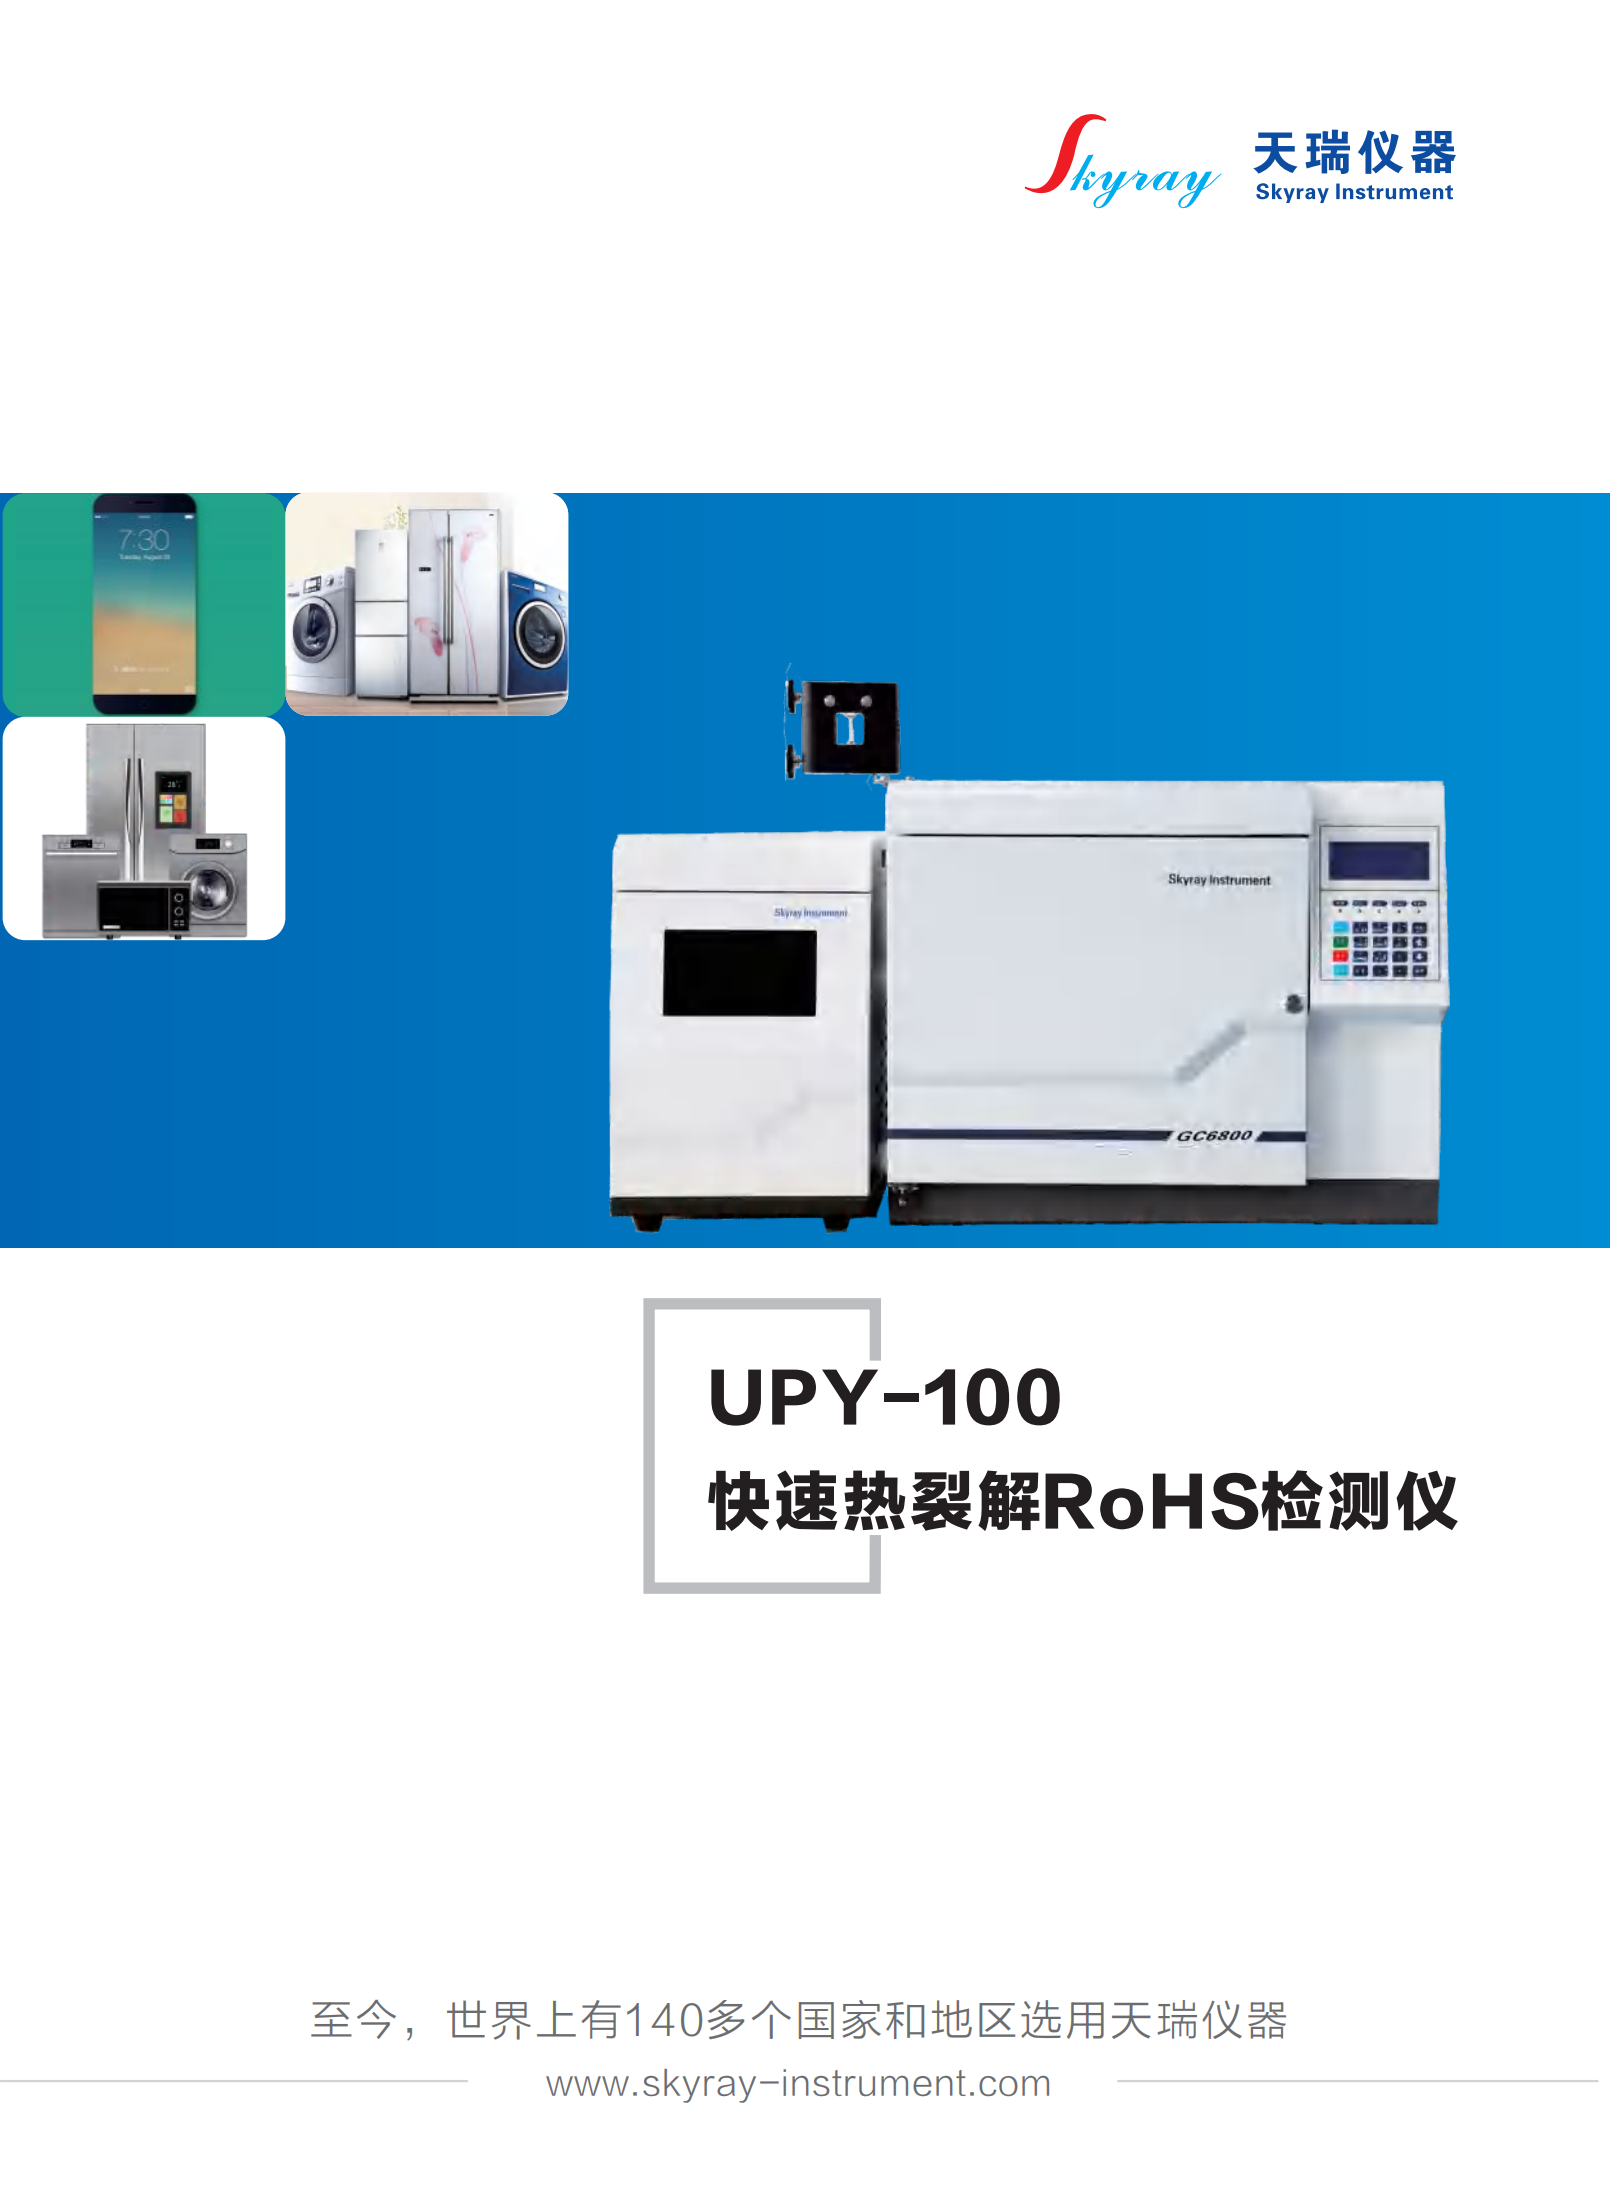 江苏天瑞仪器股份有限公司-RoHS2.0检测解决方案（UPY-100热裂解方案)